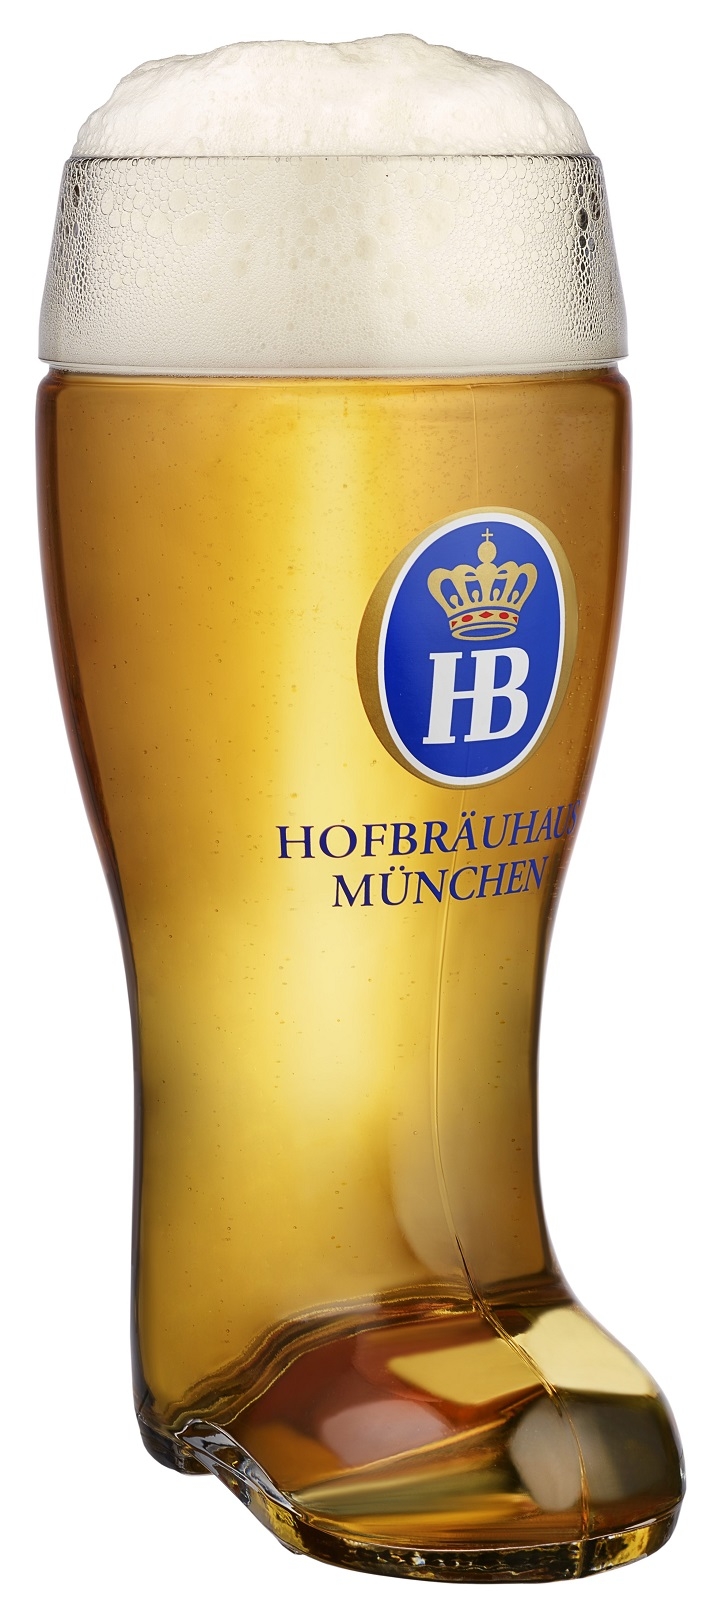 Hofbrauhaus Munich Munchen Glass German Beer Boot 1 L